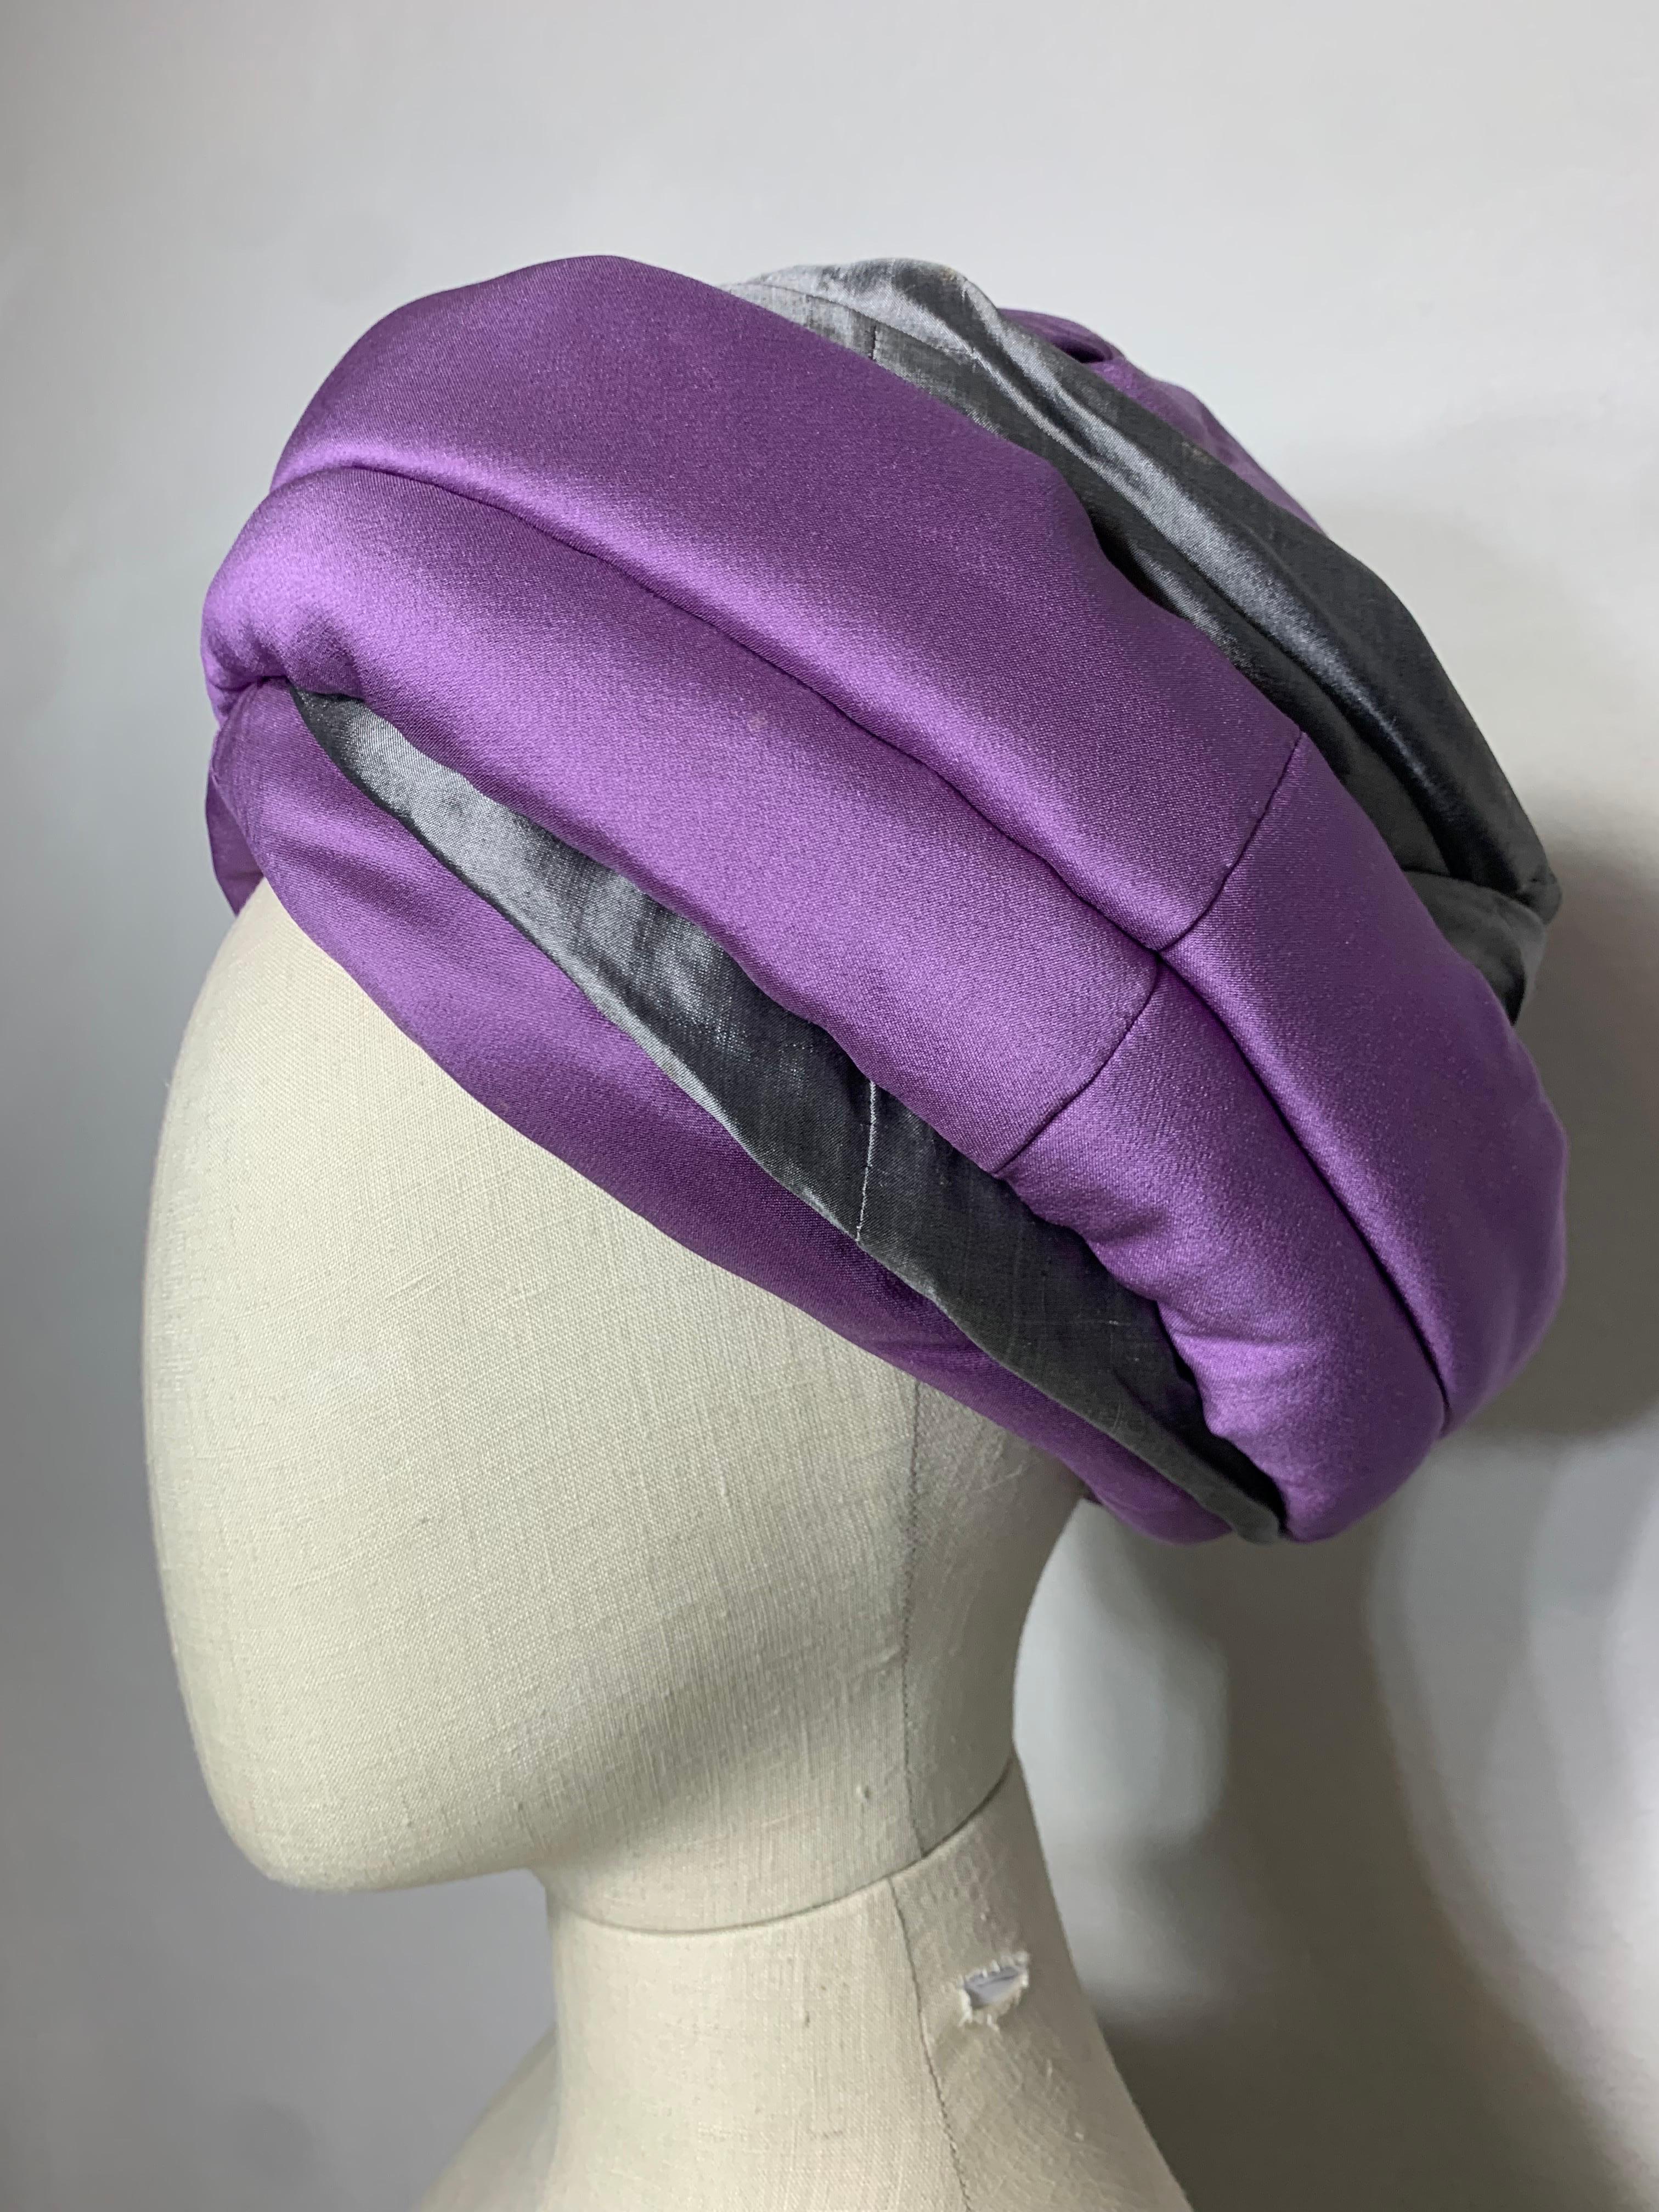 Custom-Made Suzanne Couture Millinery Purple & Gray Tufted & Draped Toque Turban w Hut Pin: Leicht spitze Krone. Strukturiert über einer Buckram-Basis, um ihm Höhe und Stil zu verleihen. Drapierte und gedrehte, kontrastierende violette und graue